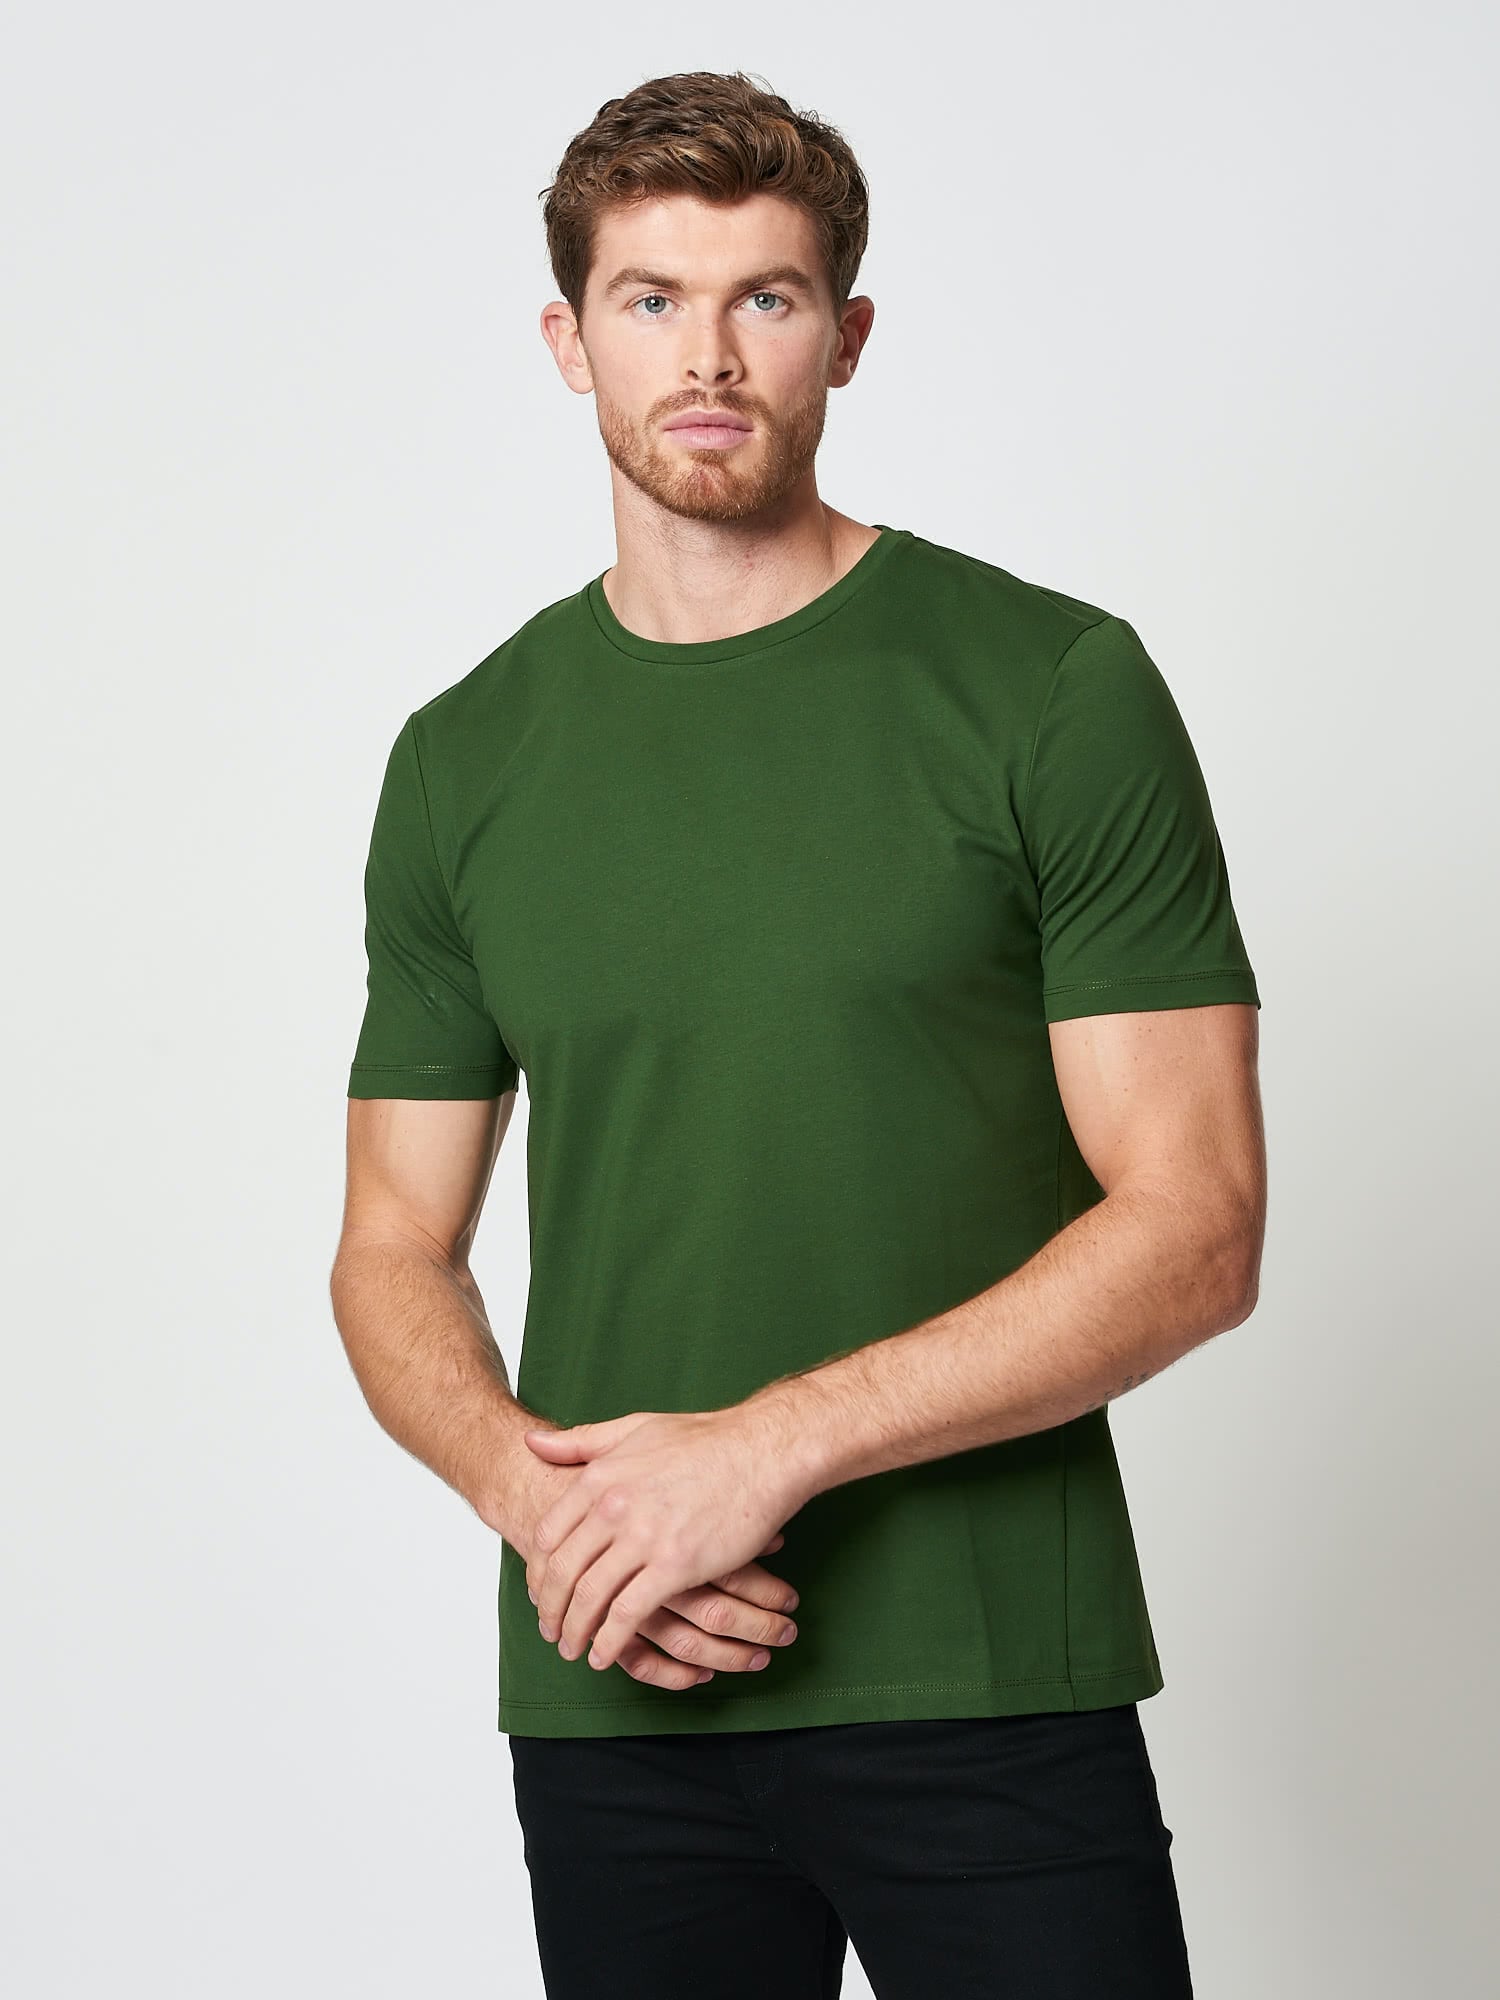 Men's green cotton tshirt | Hand & Jones